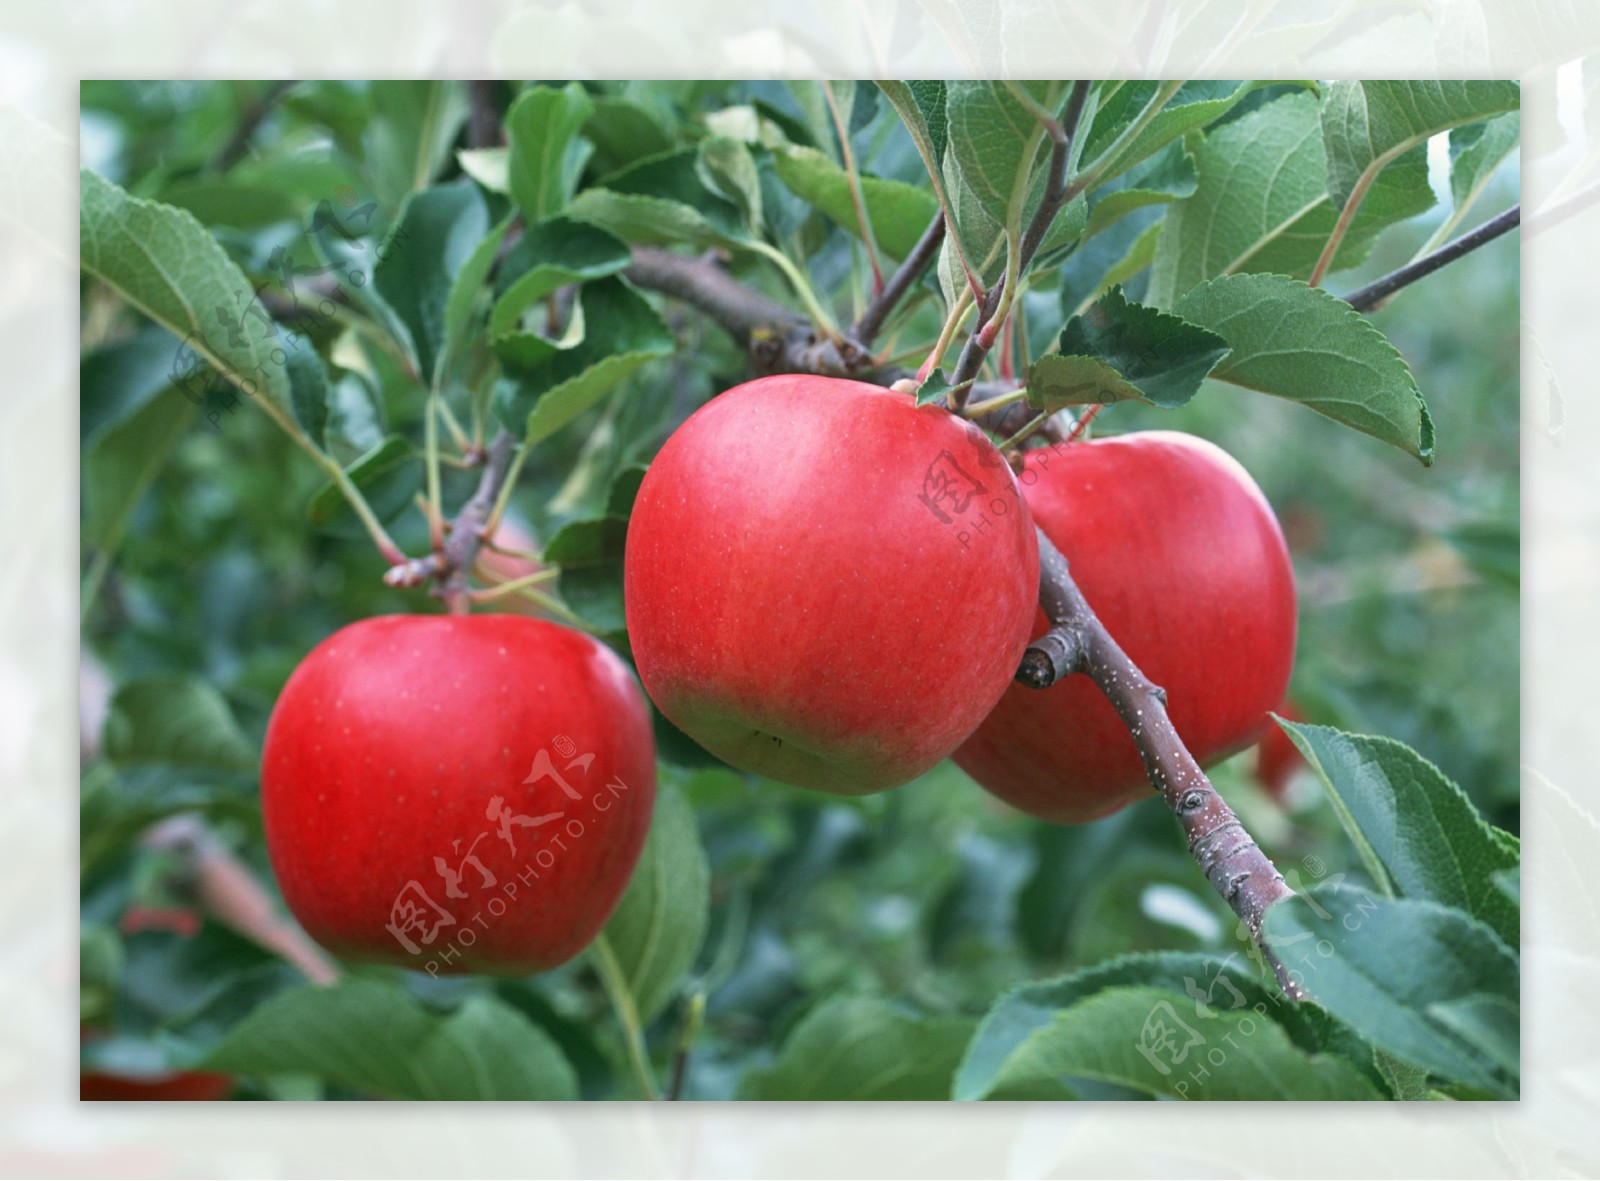 苹果树枝头上的红苹果牛顿与苹果新鲜水果